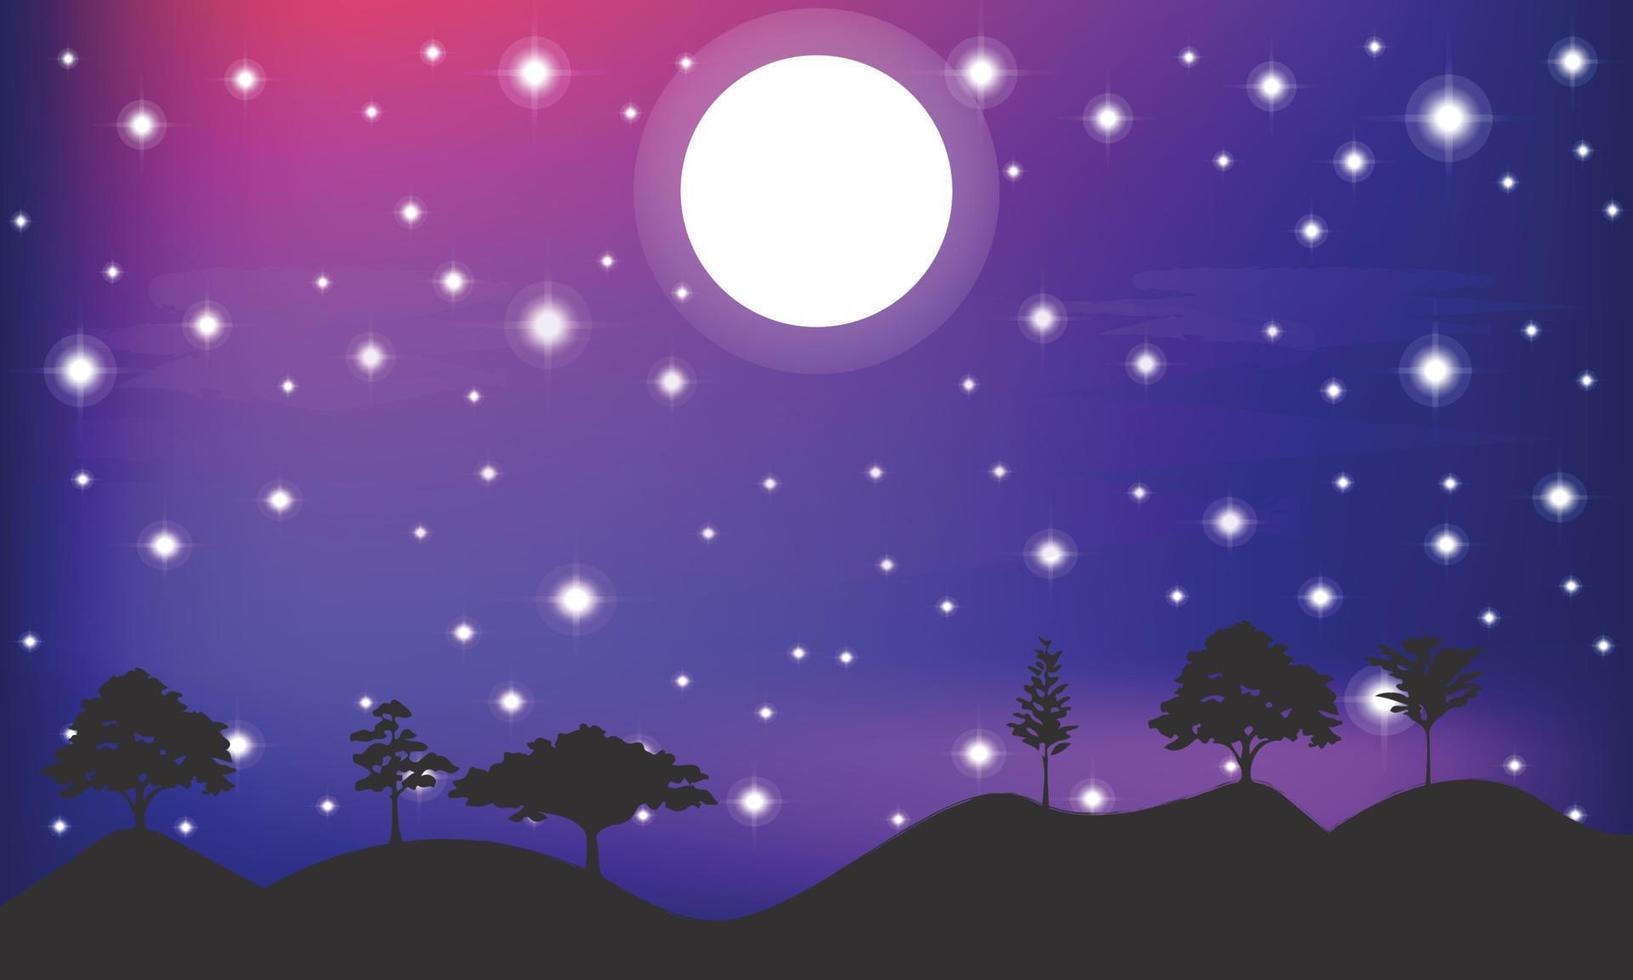 cielo estrellado nocturno abstracto, espacio azul brillante. fondo abstracto con luna y estrellas. ilustración vectorial para pancartas, folletos y diseño web vector